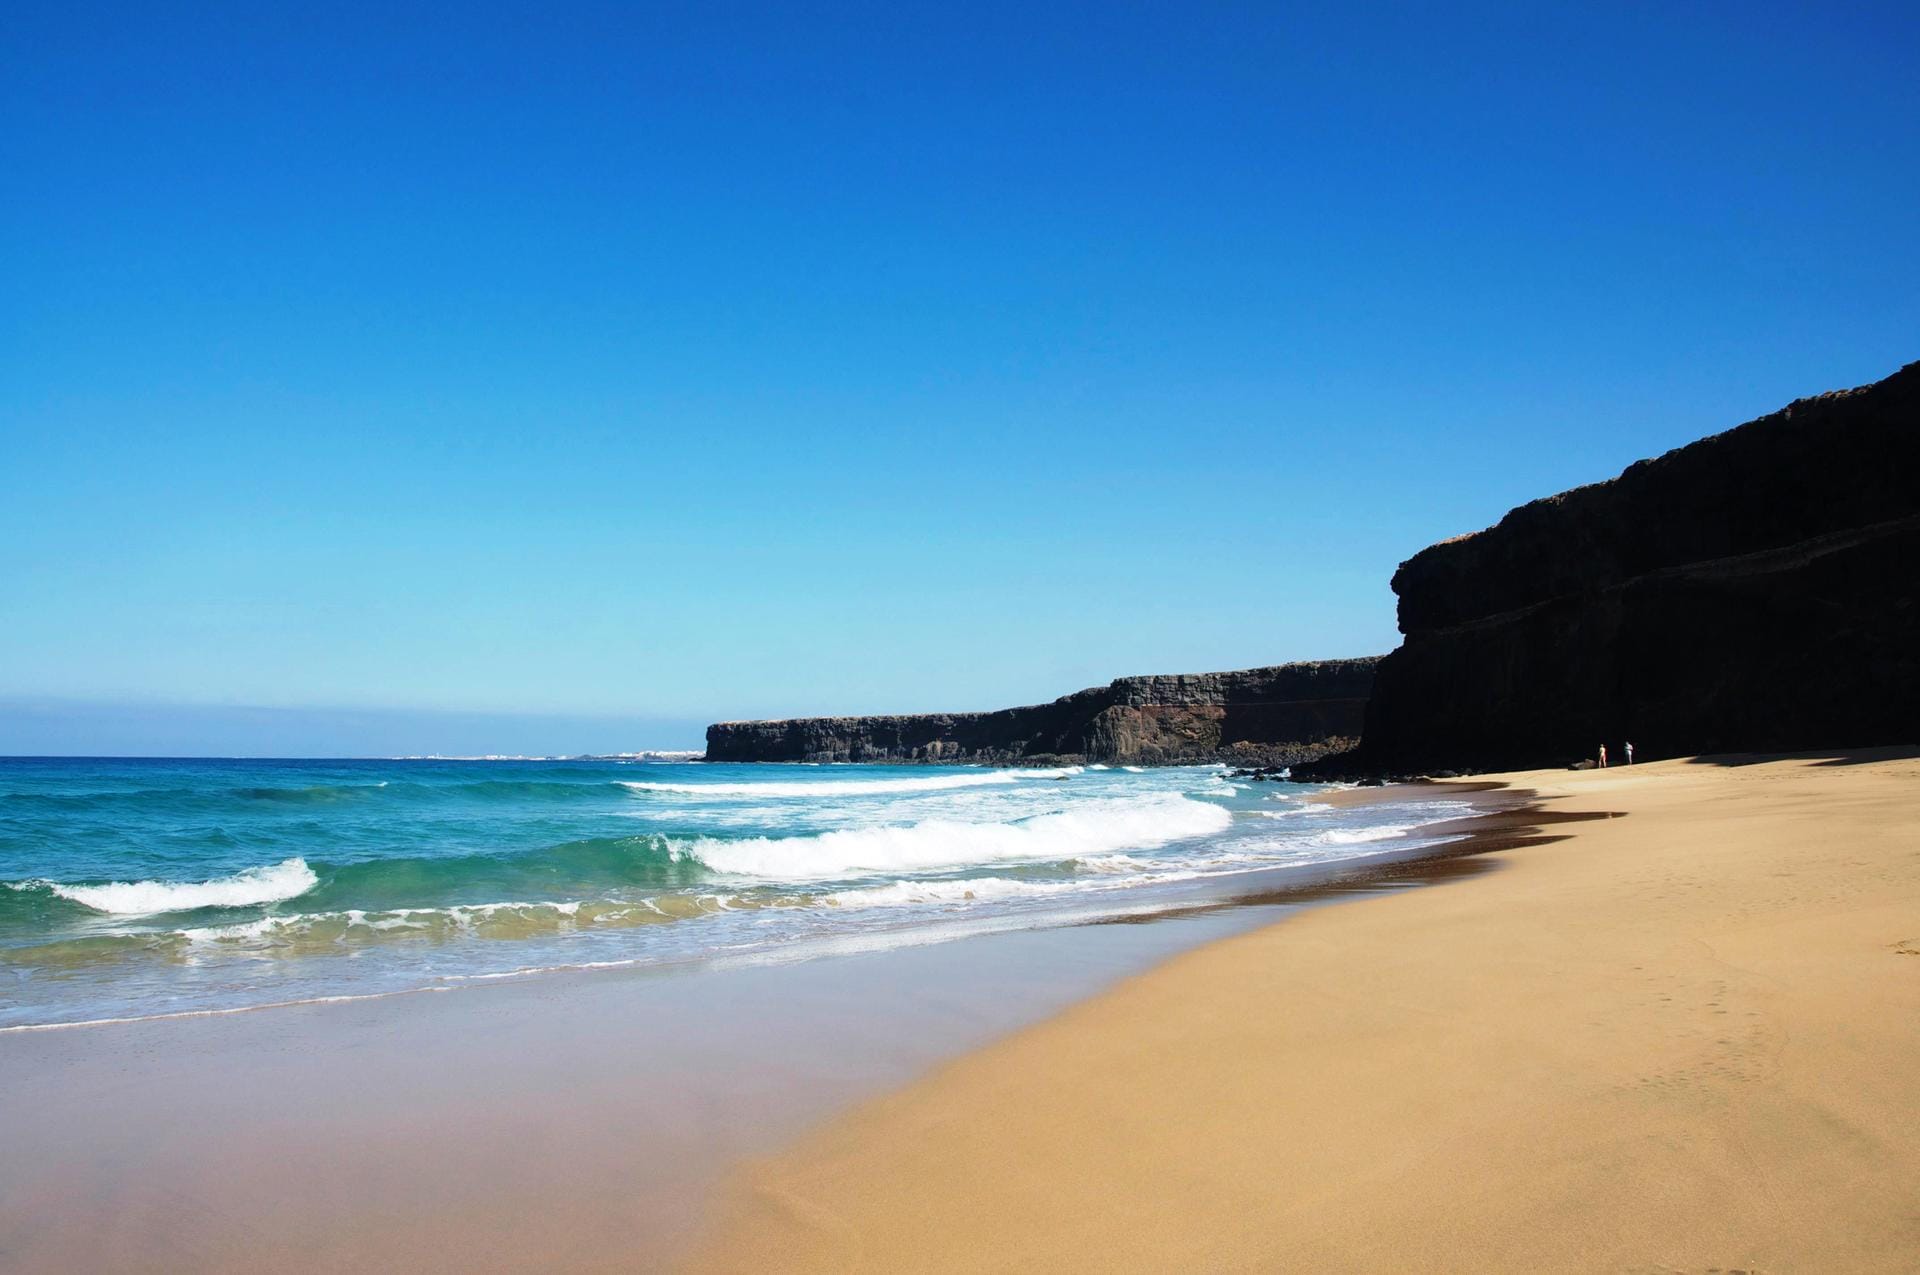 Der El Cotillo Beach auf Fuerteventura belegt den vierten Platz. Besonders beeindruckend ist hier das Zusammenspiel von Sandstrand und Vulkanfelsen im Hintergrund.